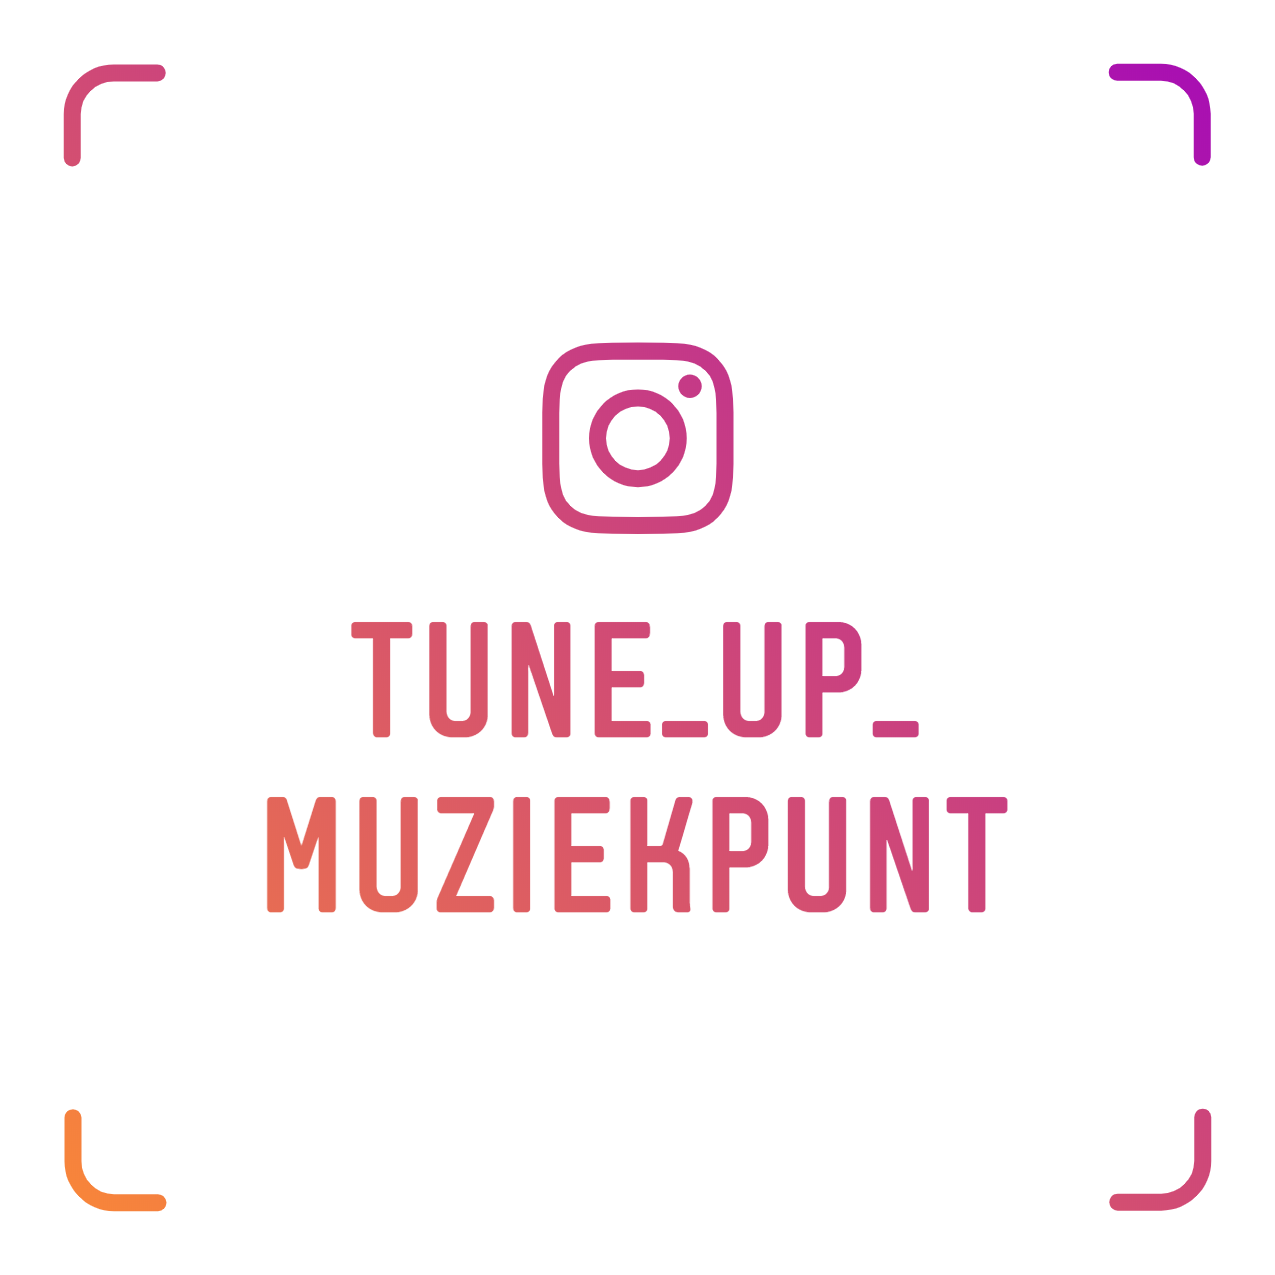 Tune Up Muziekpunt | Instagram